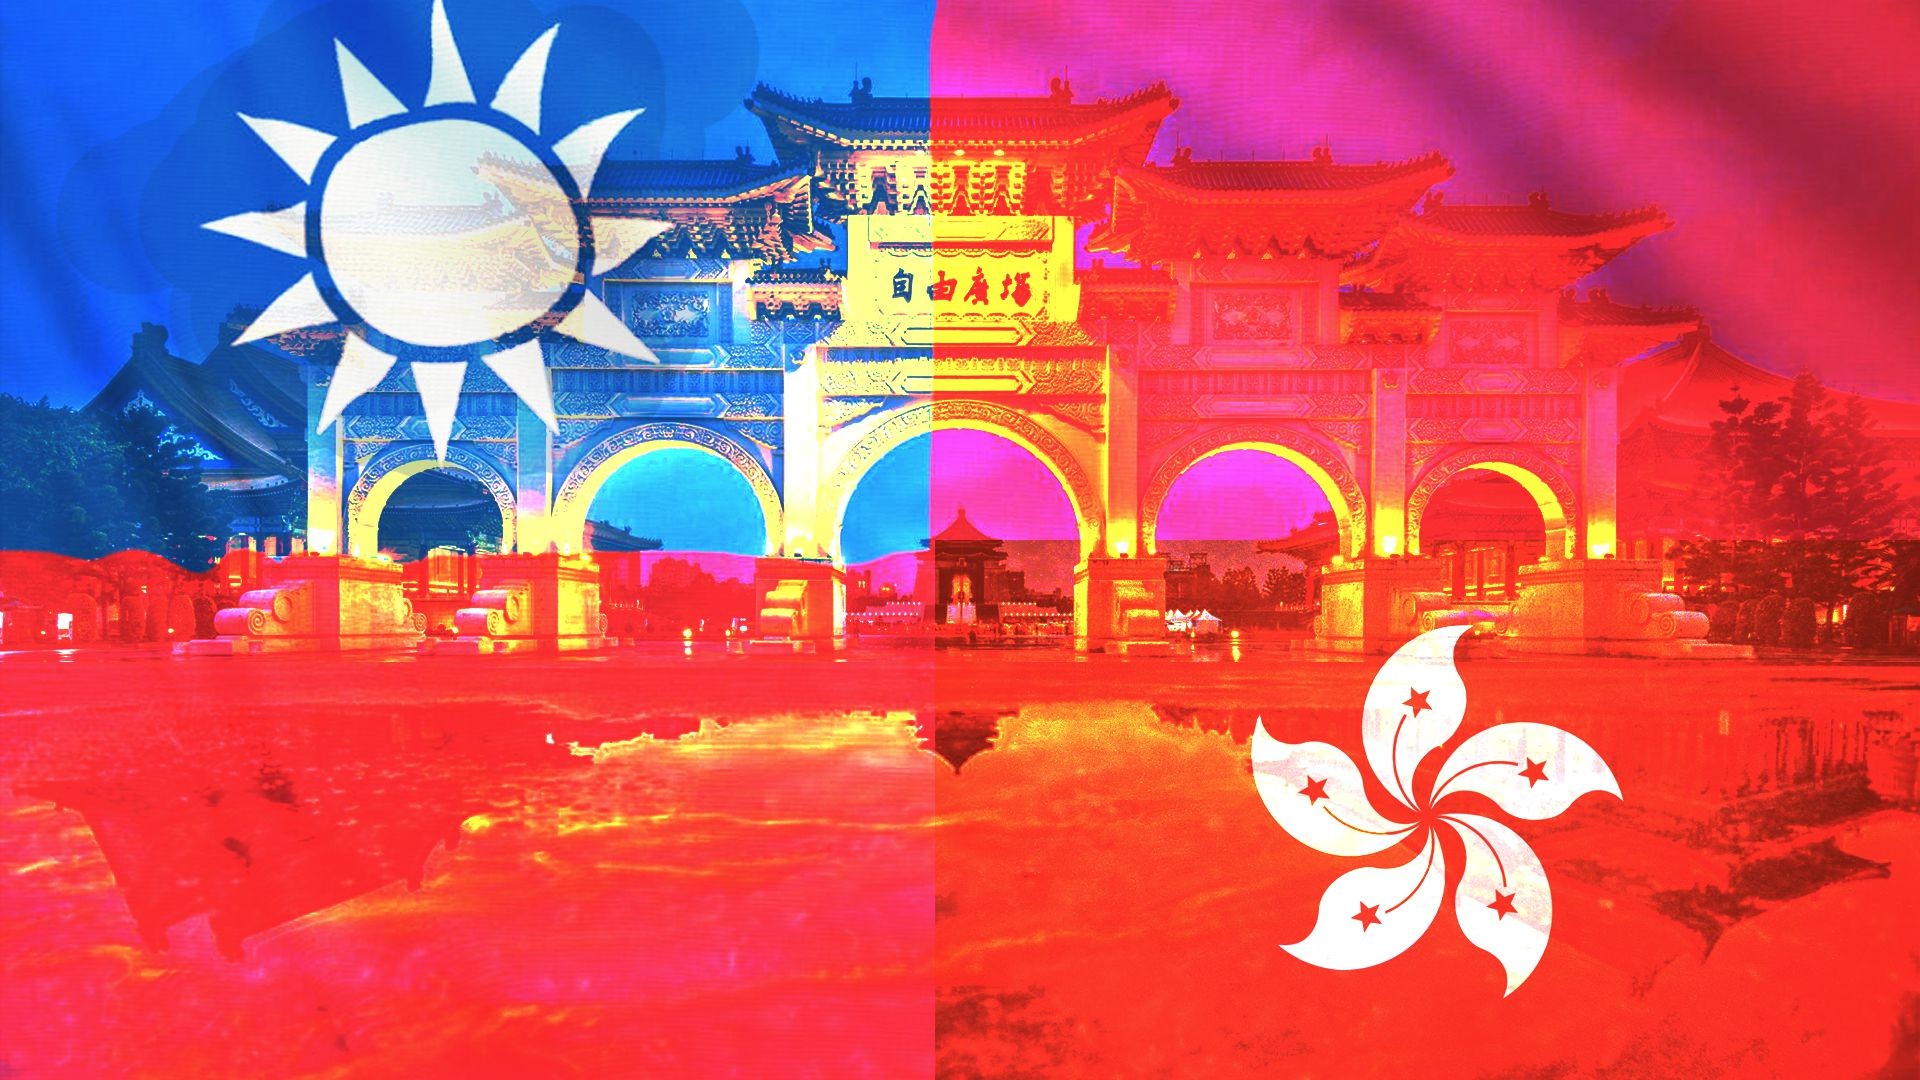 Đài Loan cấp tập quảng bá hình ảnh du lịch để thu hút khách du lịch Hồng Kông